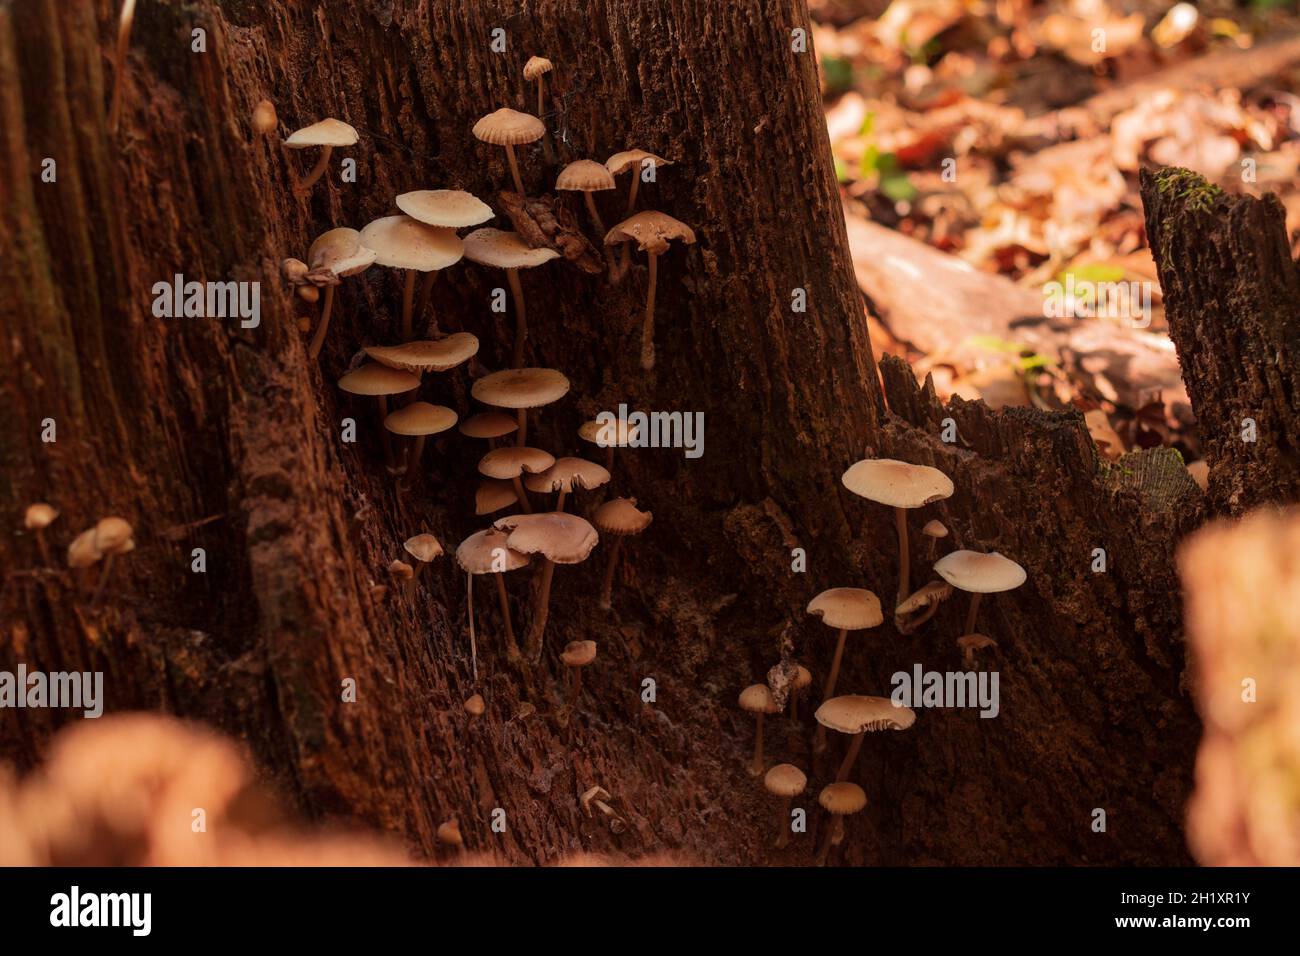 Gruppe von nicht essbaren Pilzen, die auf einem Baumstamm wachsen. Laub auf dem Hintergrund. Herbst, Herbst. Stockfoto